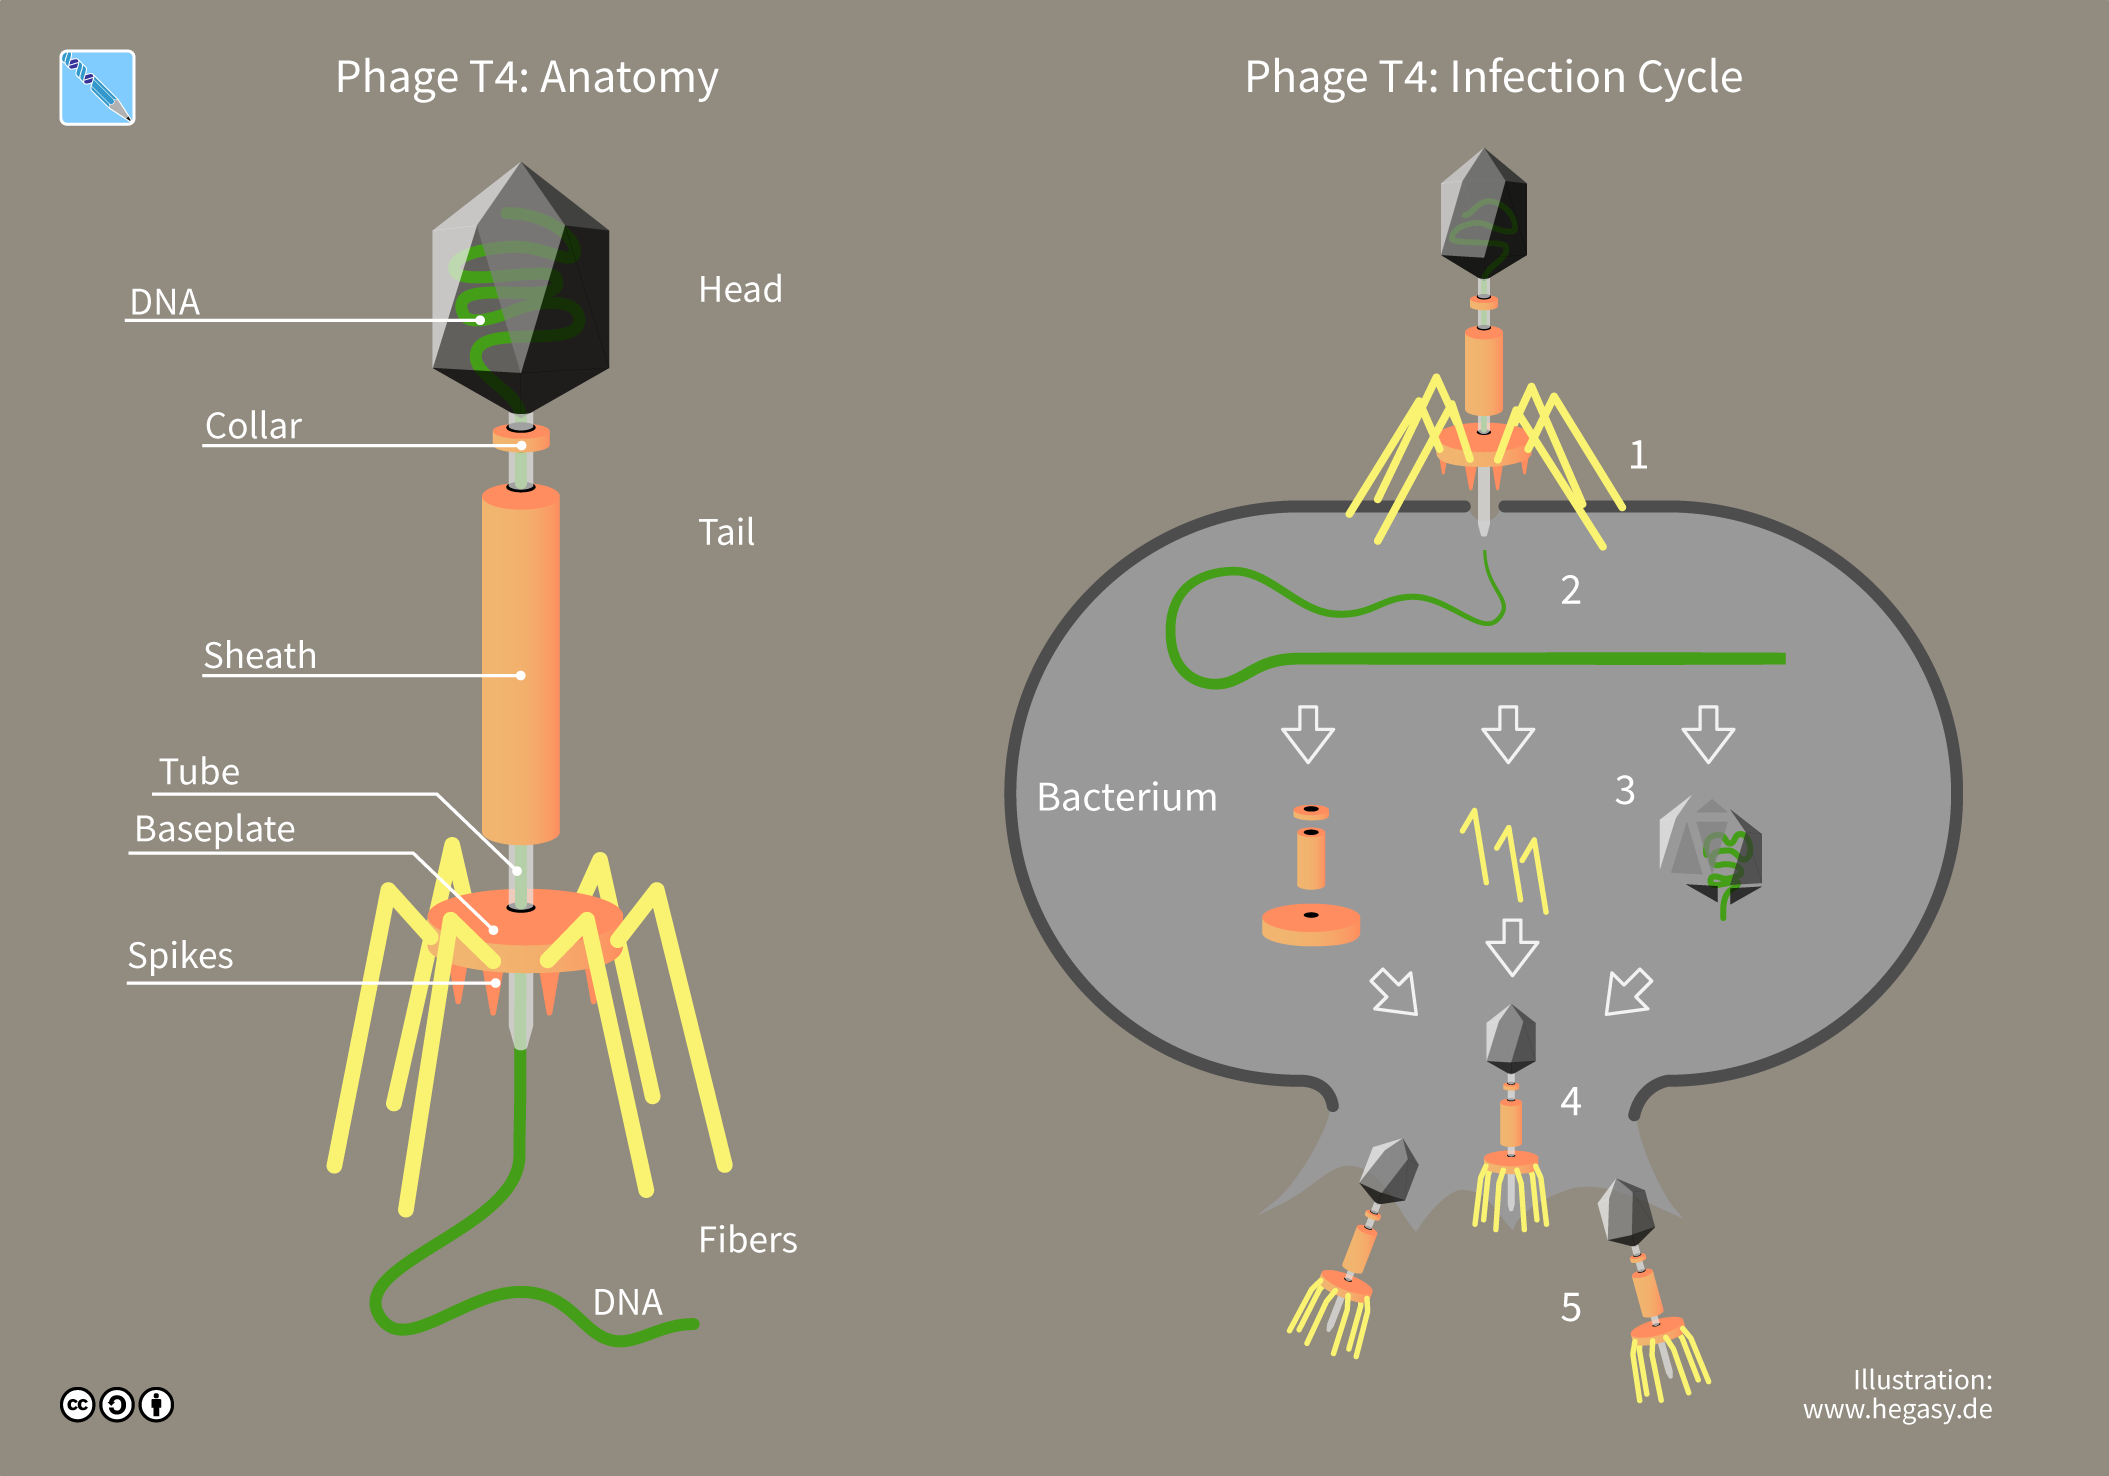 Estructura básica de un bacteriófago. En la imagen también se puede apreciar el ciclo de un bacteriófago infectando a una bacteria y produciendo miles de copias que lisarán la célula para dispersarse.